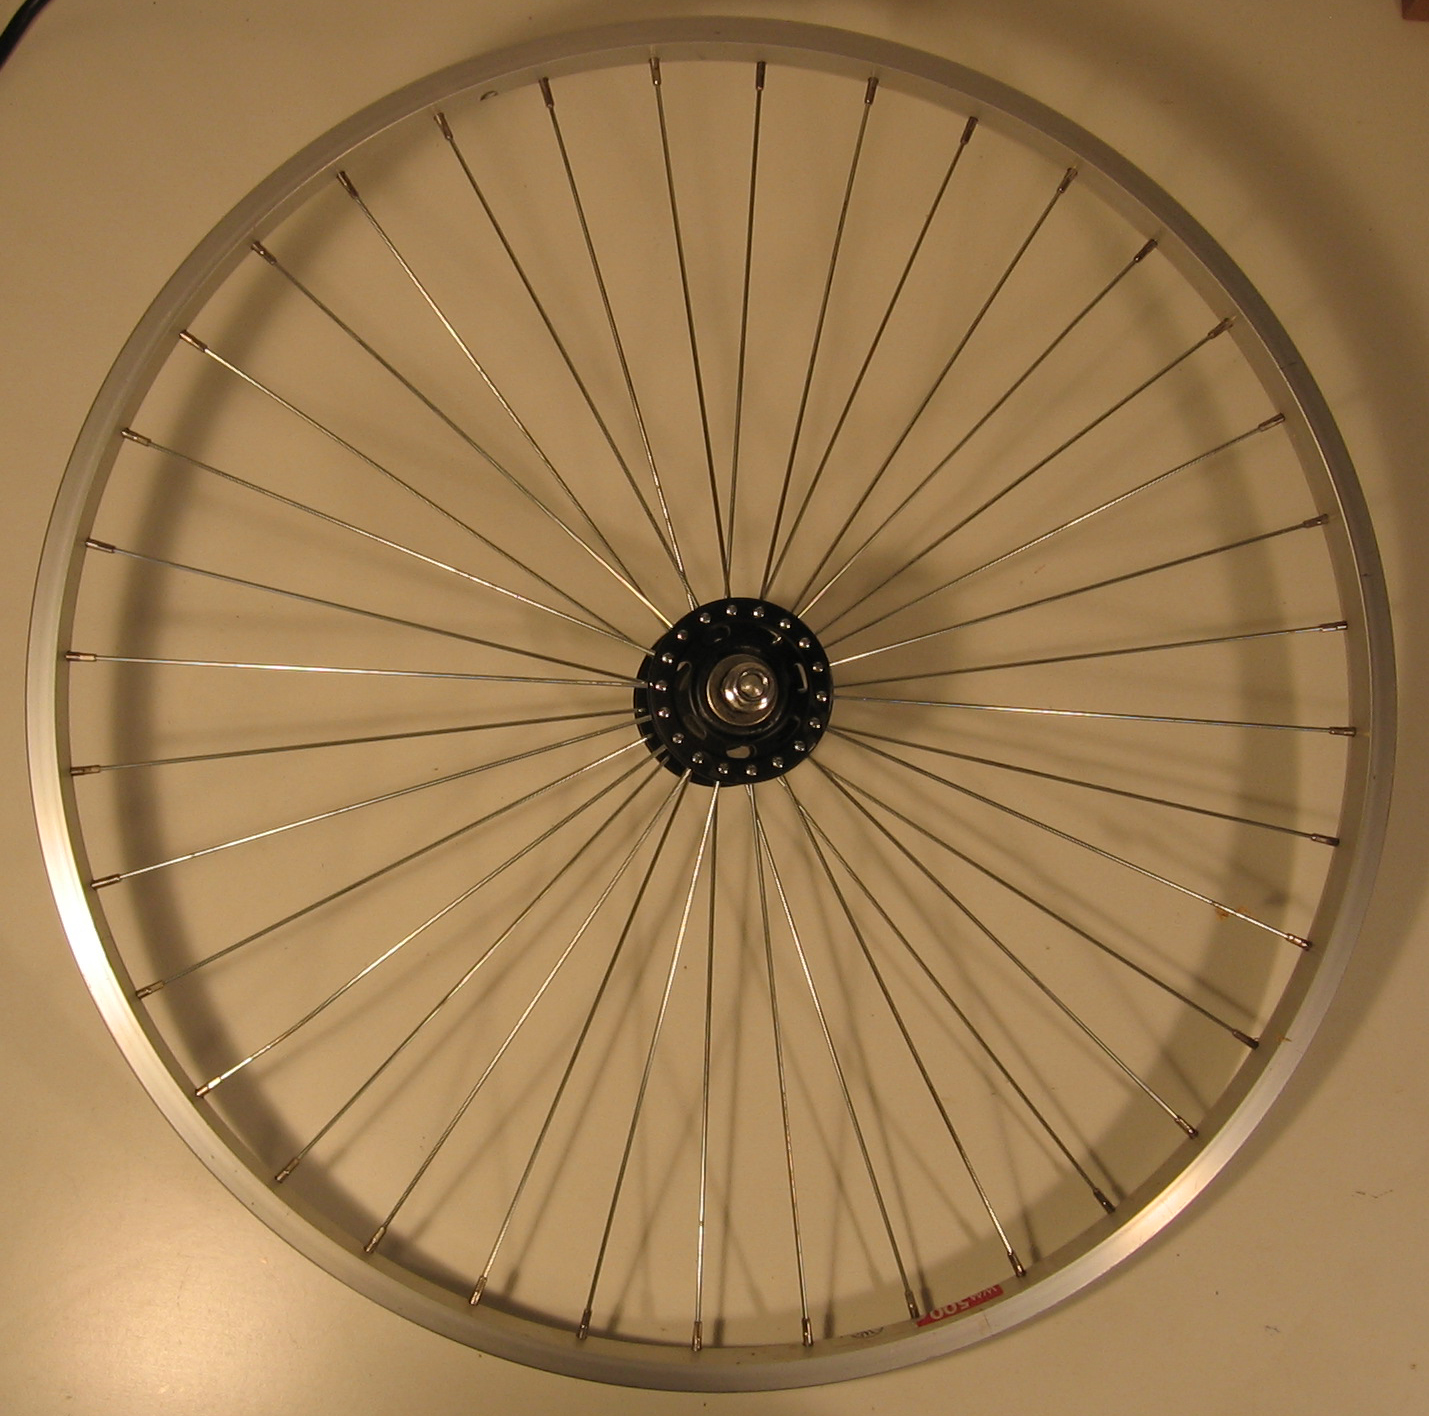 36-spoke radial front wheel